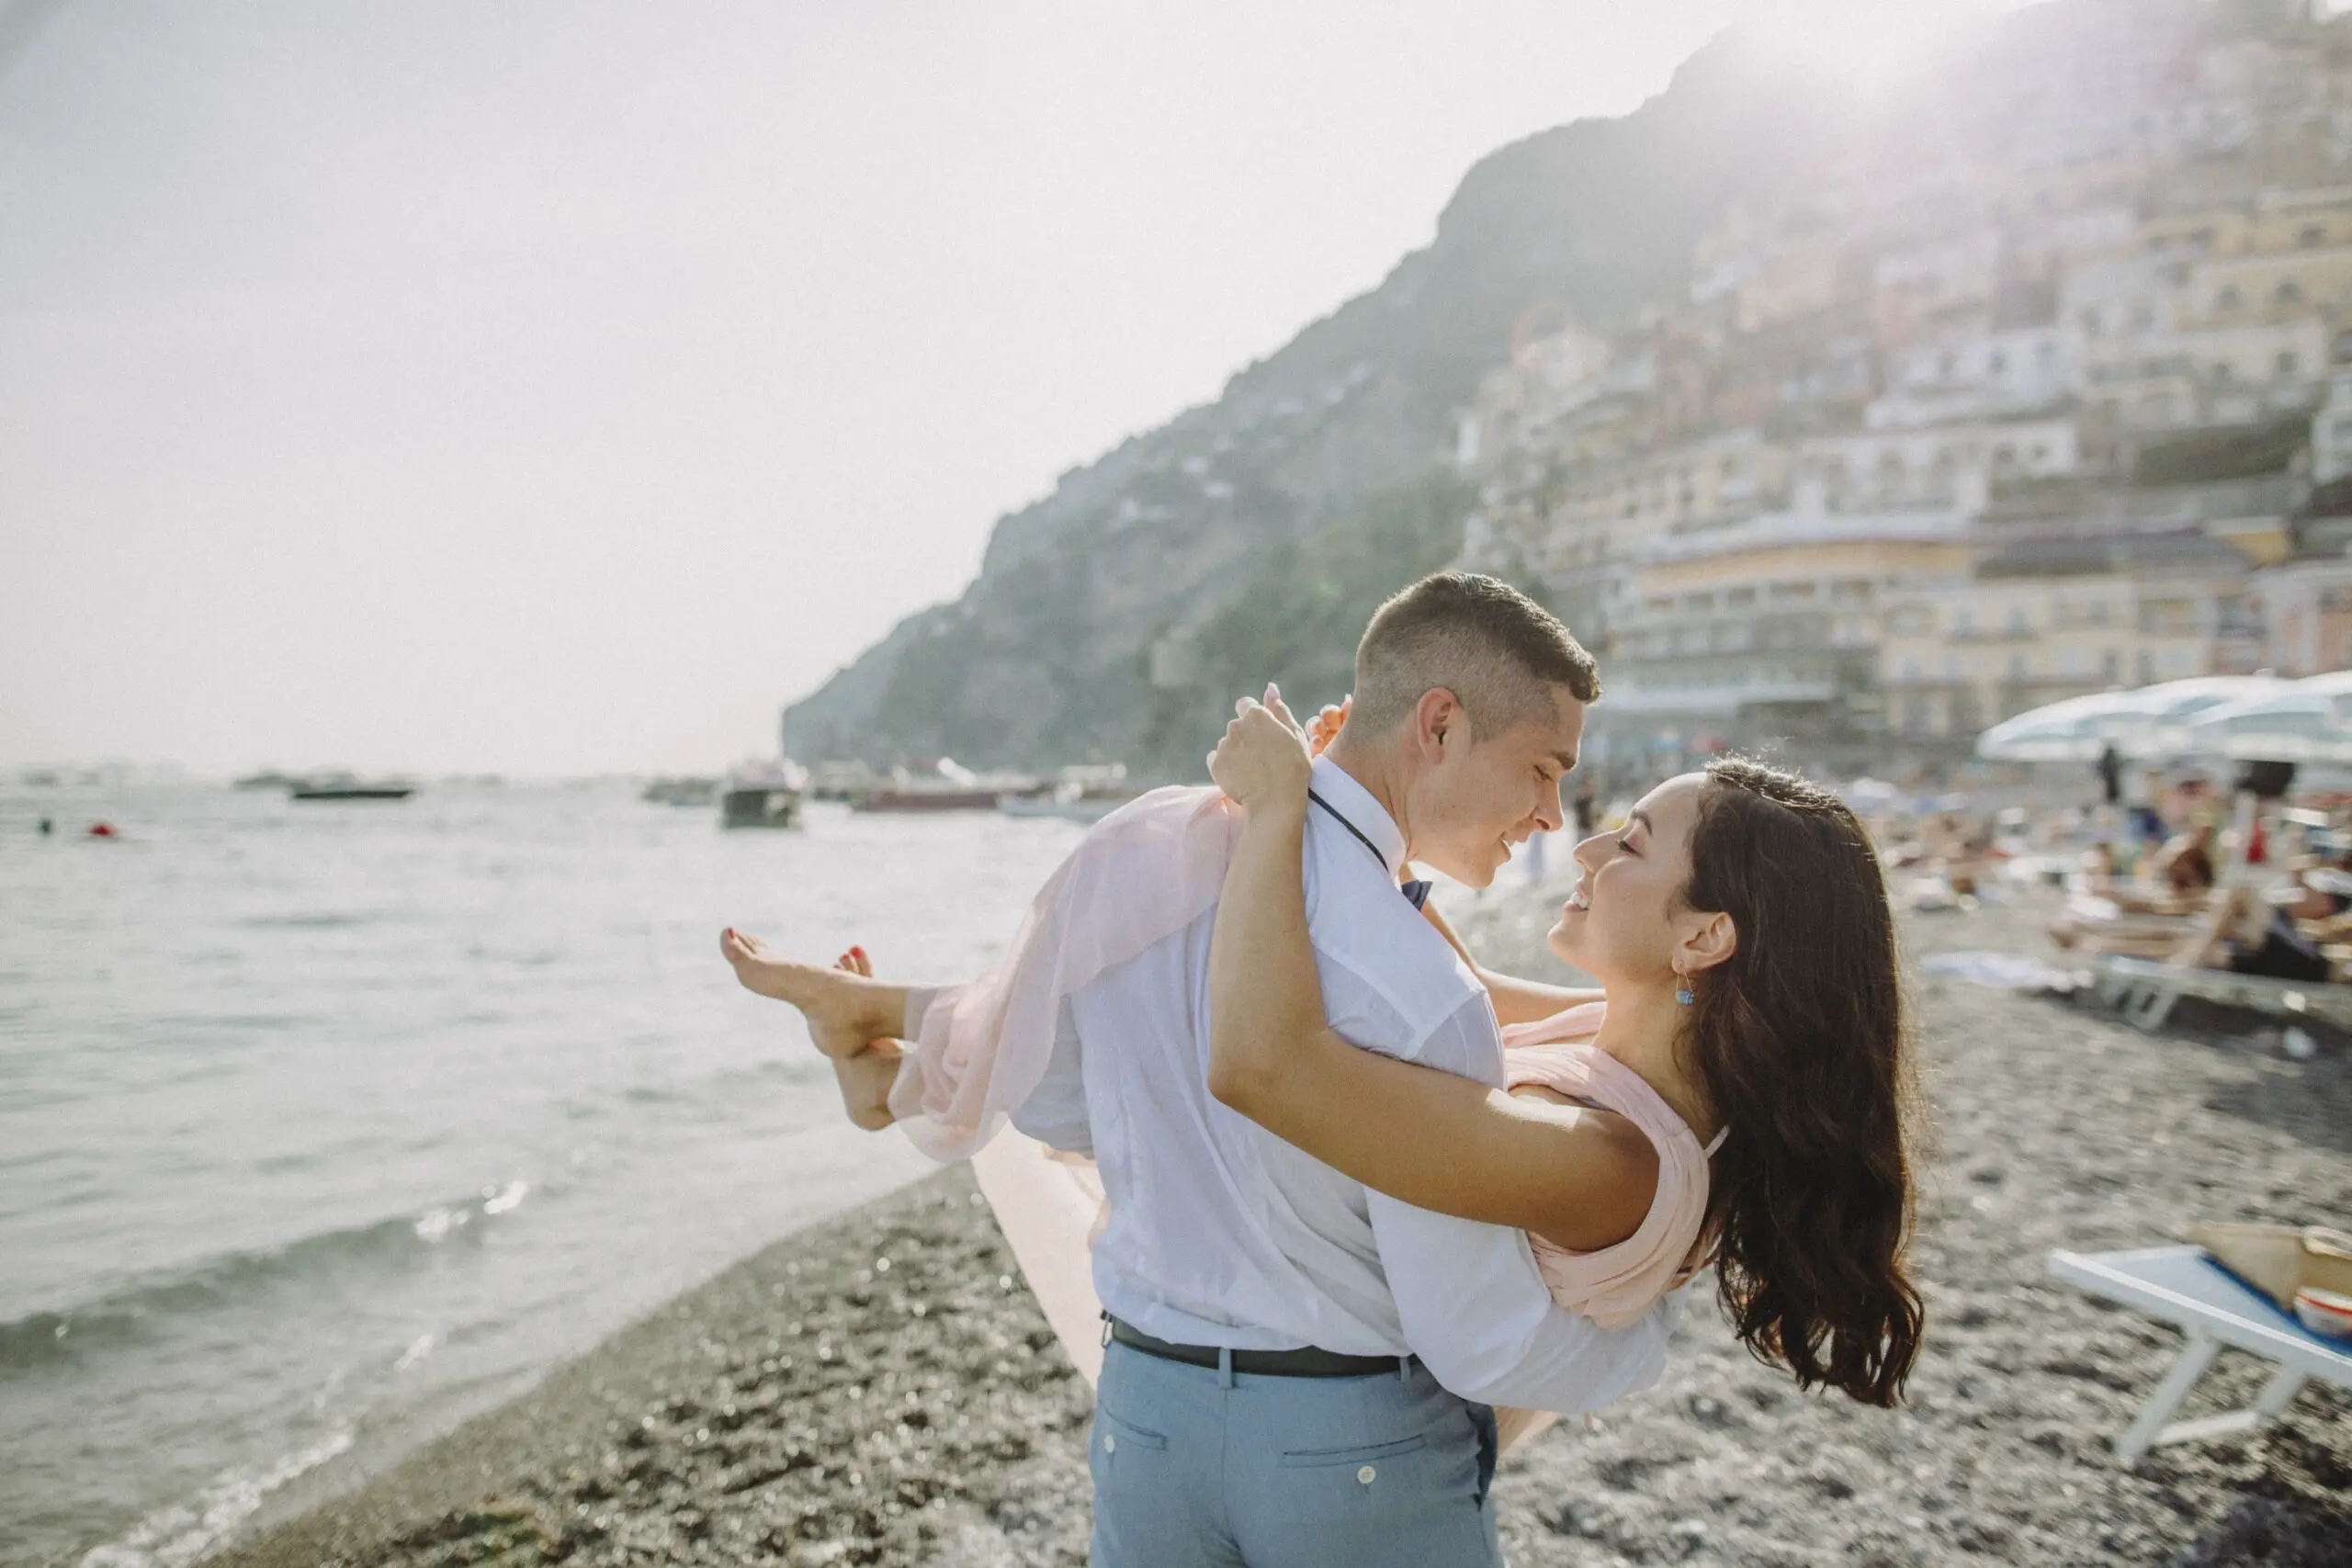 Couple's photoshoot by Roberta, Localgrapher in Positano